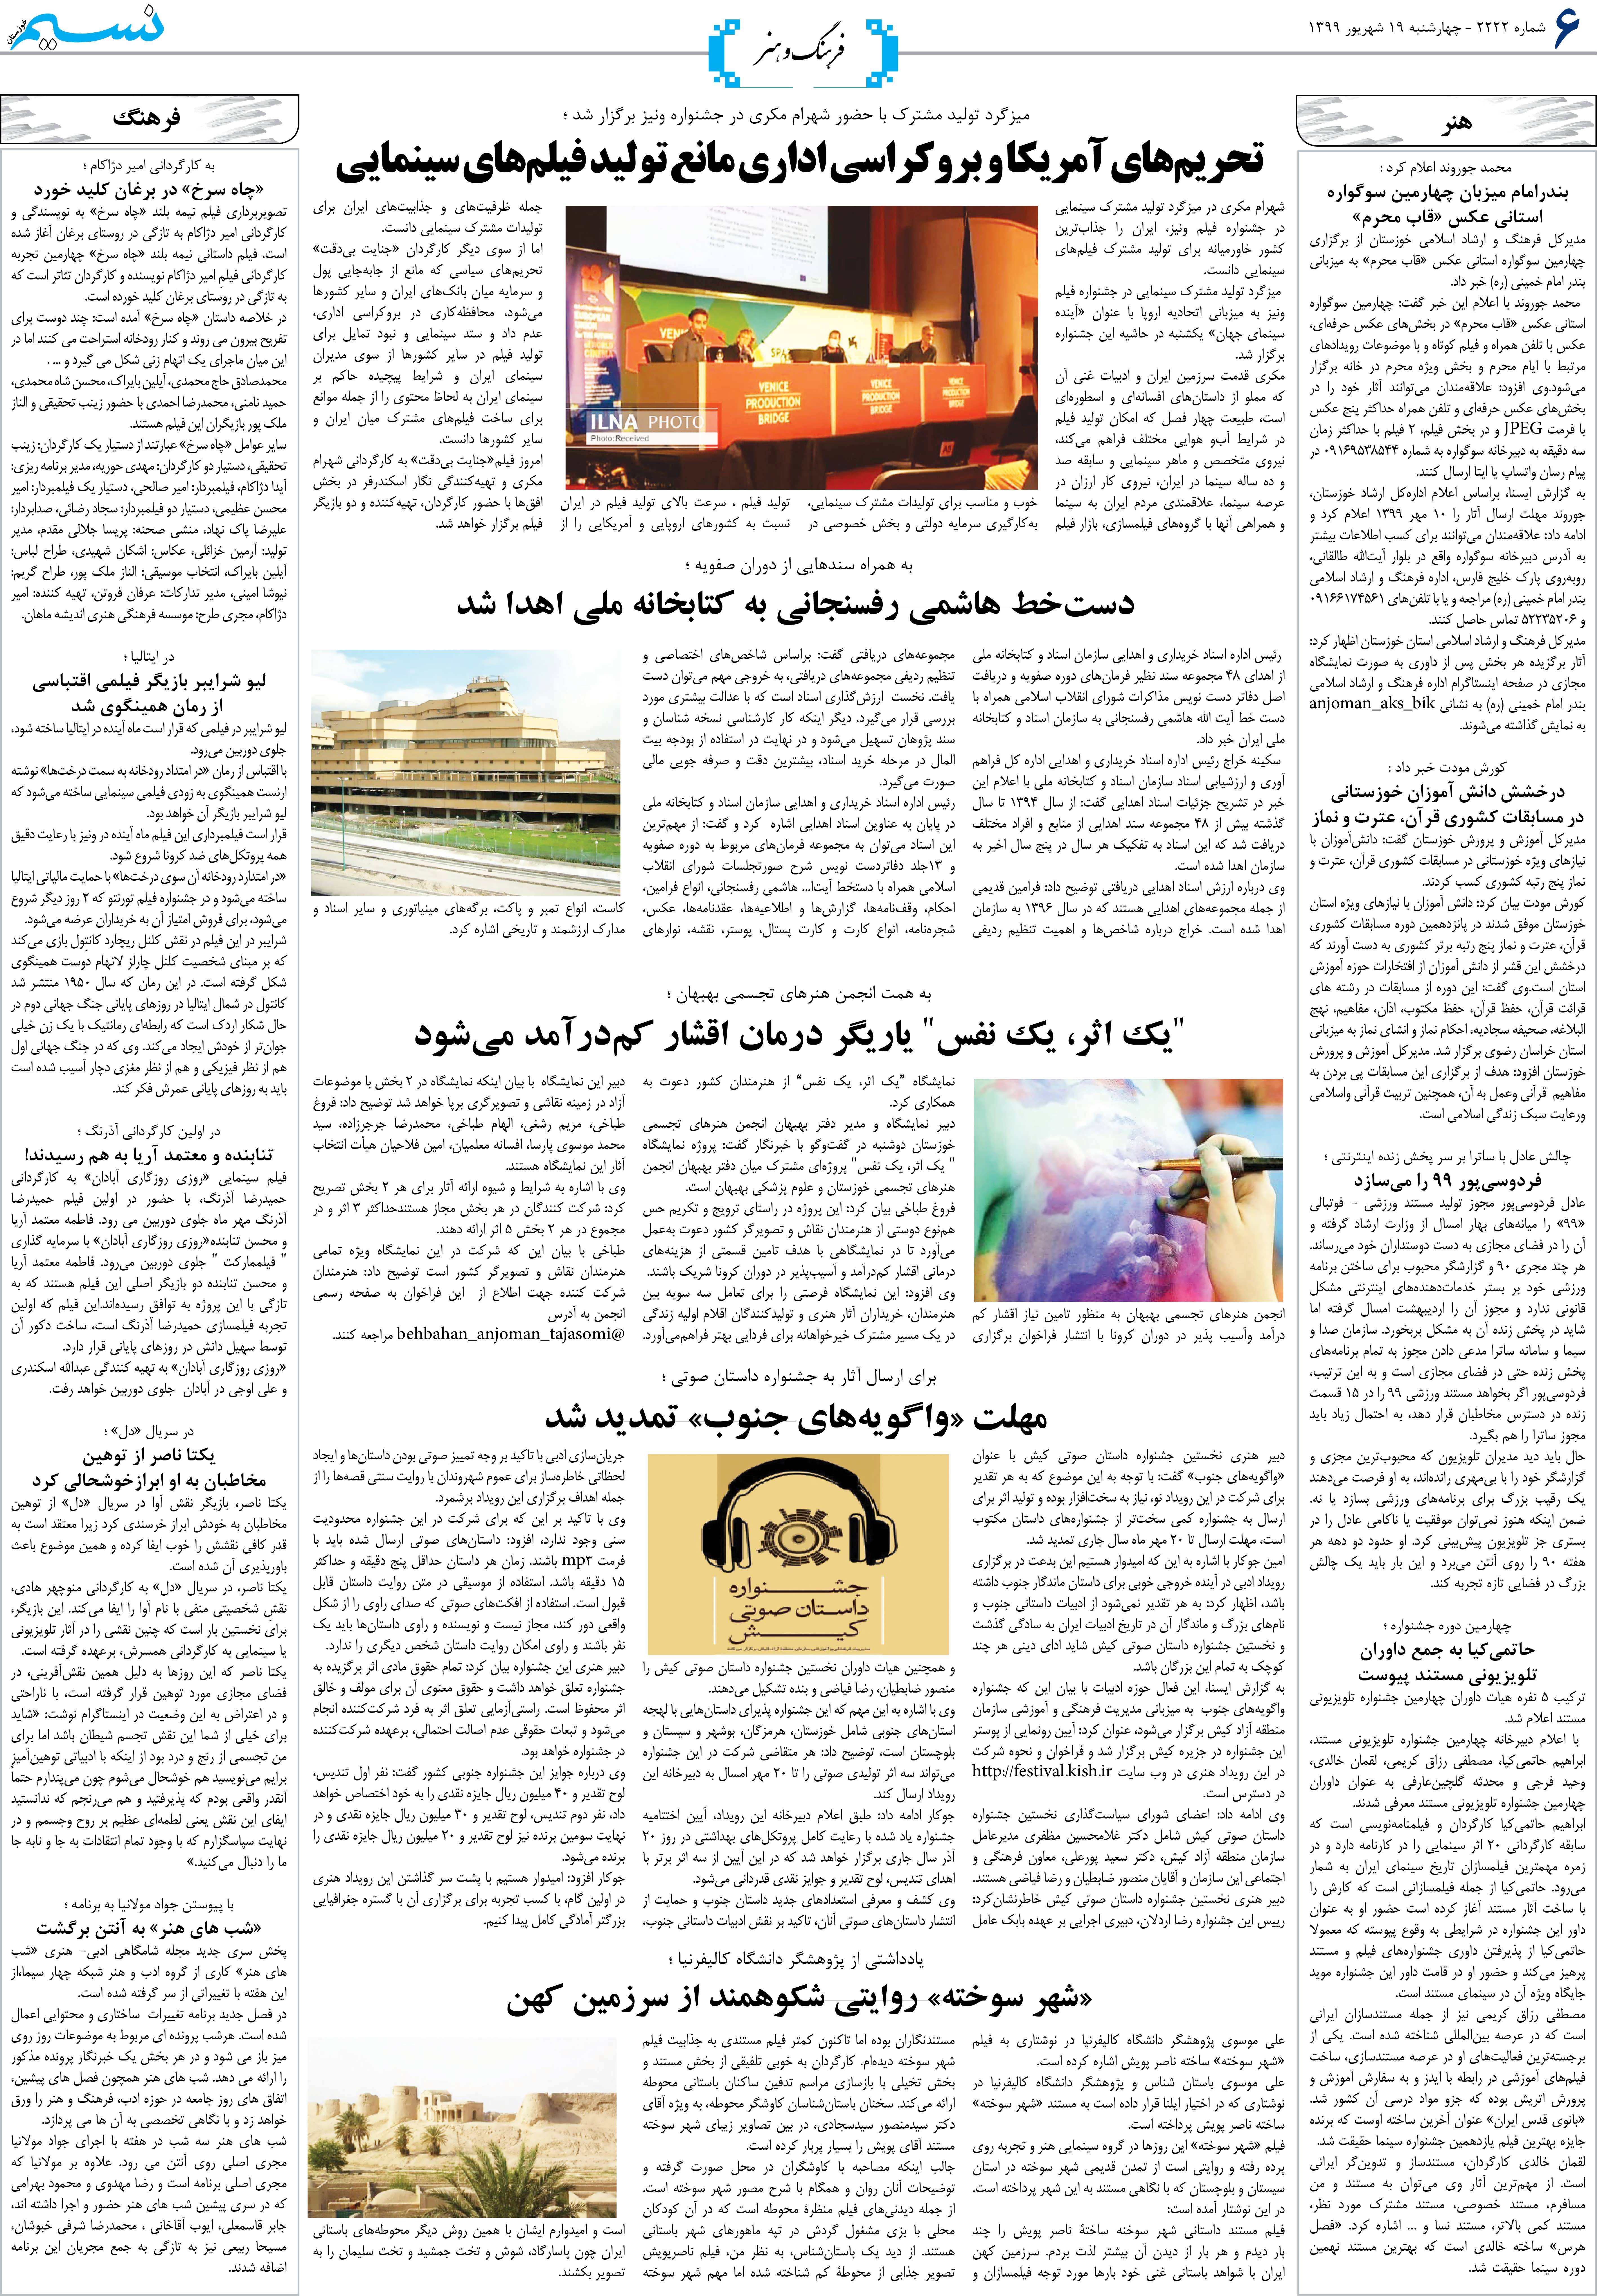 صفحه فرهنگ و هنر روزنامه نسیم شماره 2222